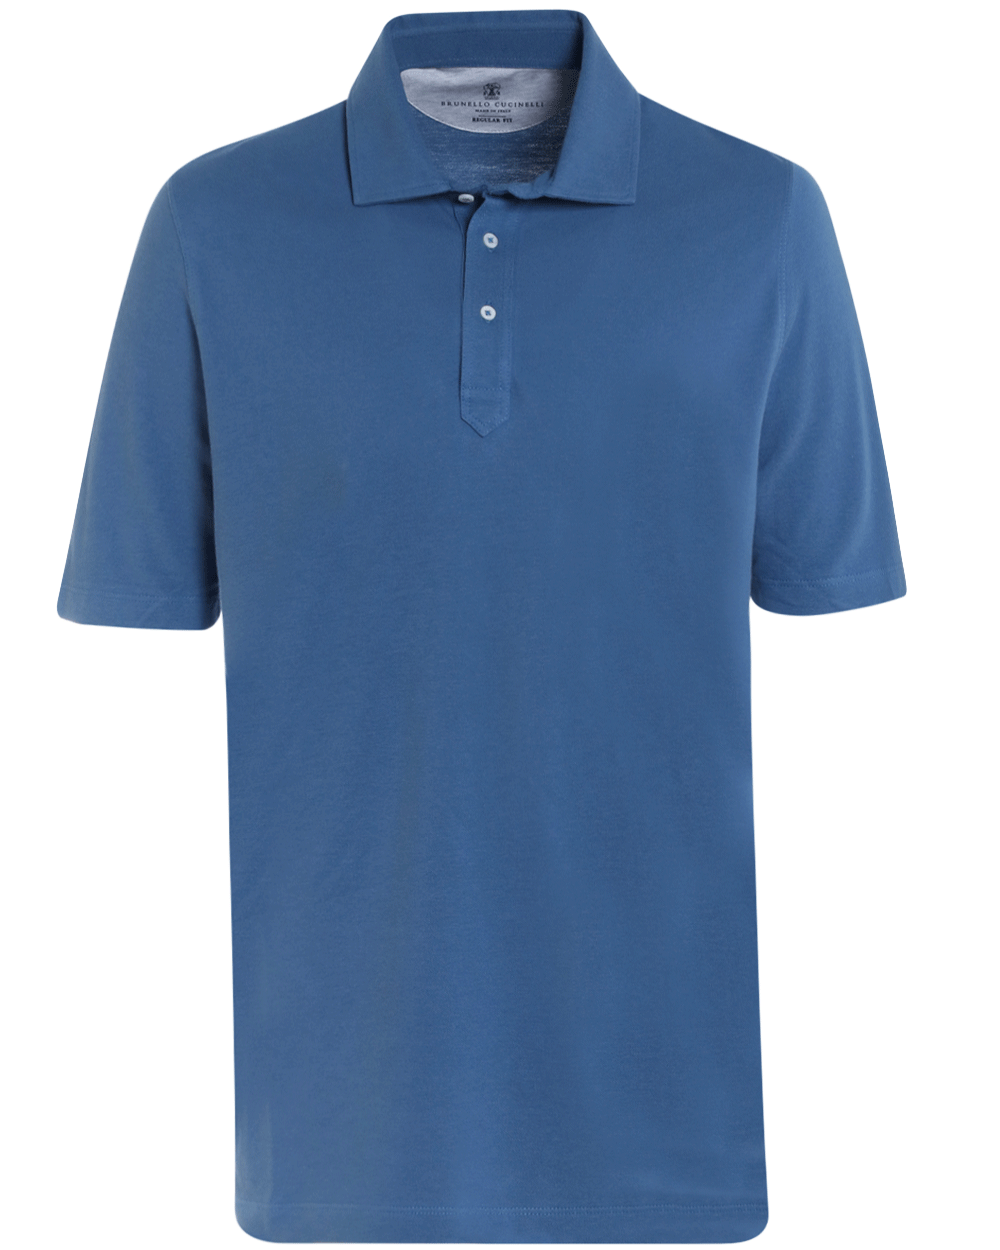 Mid Blue Cotton Pique Short Sleeve Polo